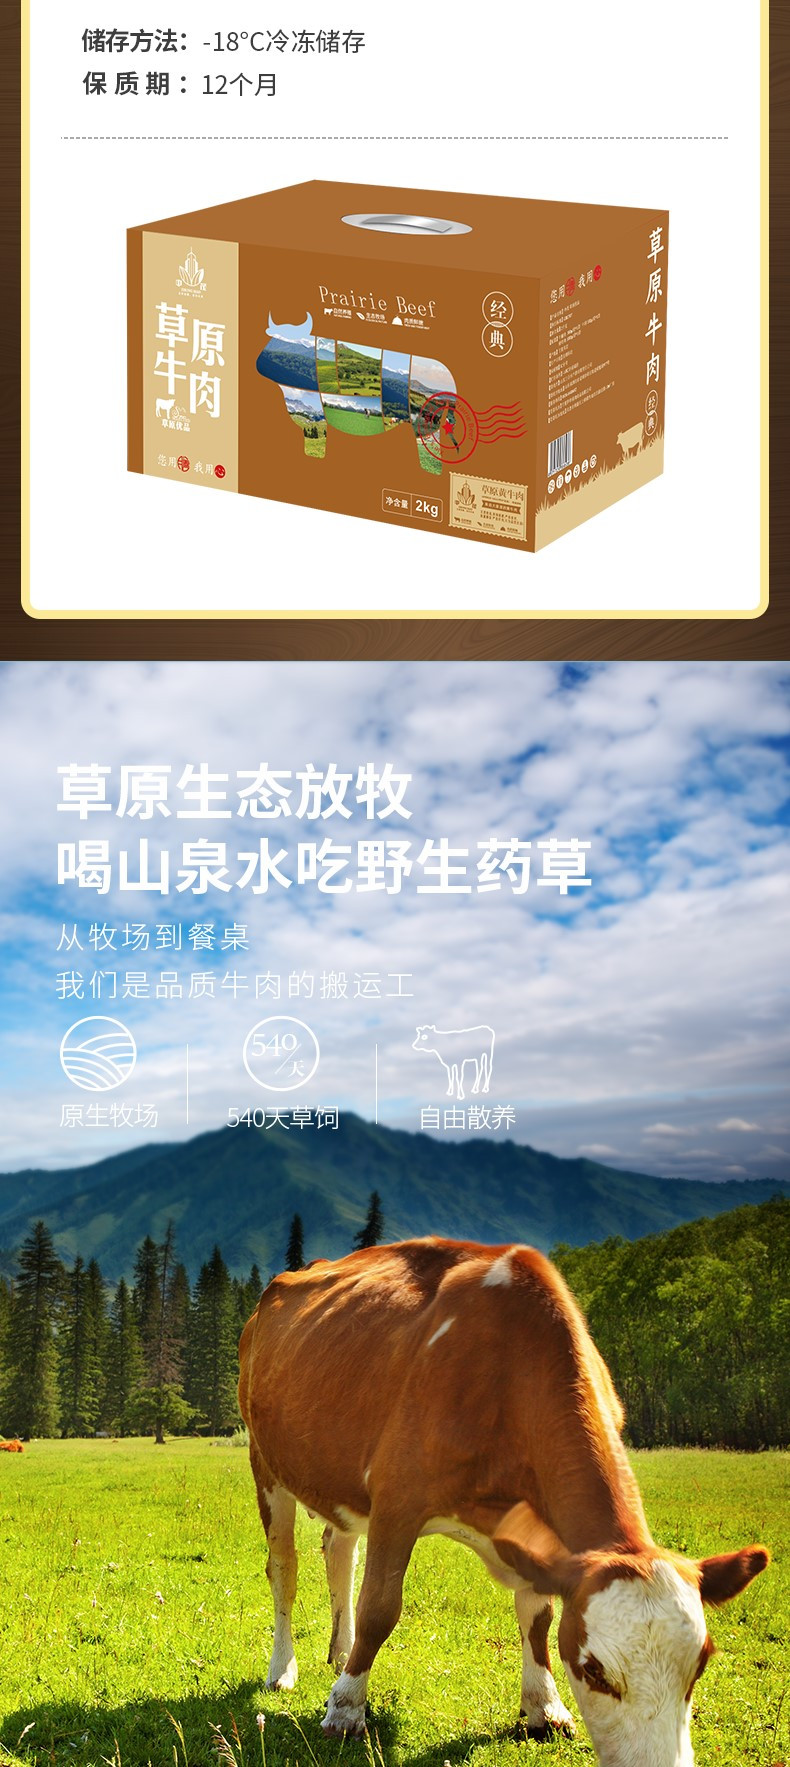 中茂 草原优品黄牛肉礼盒-498型